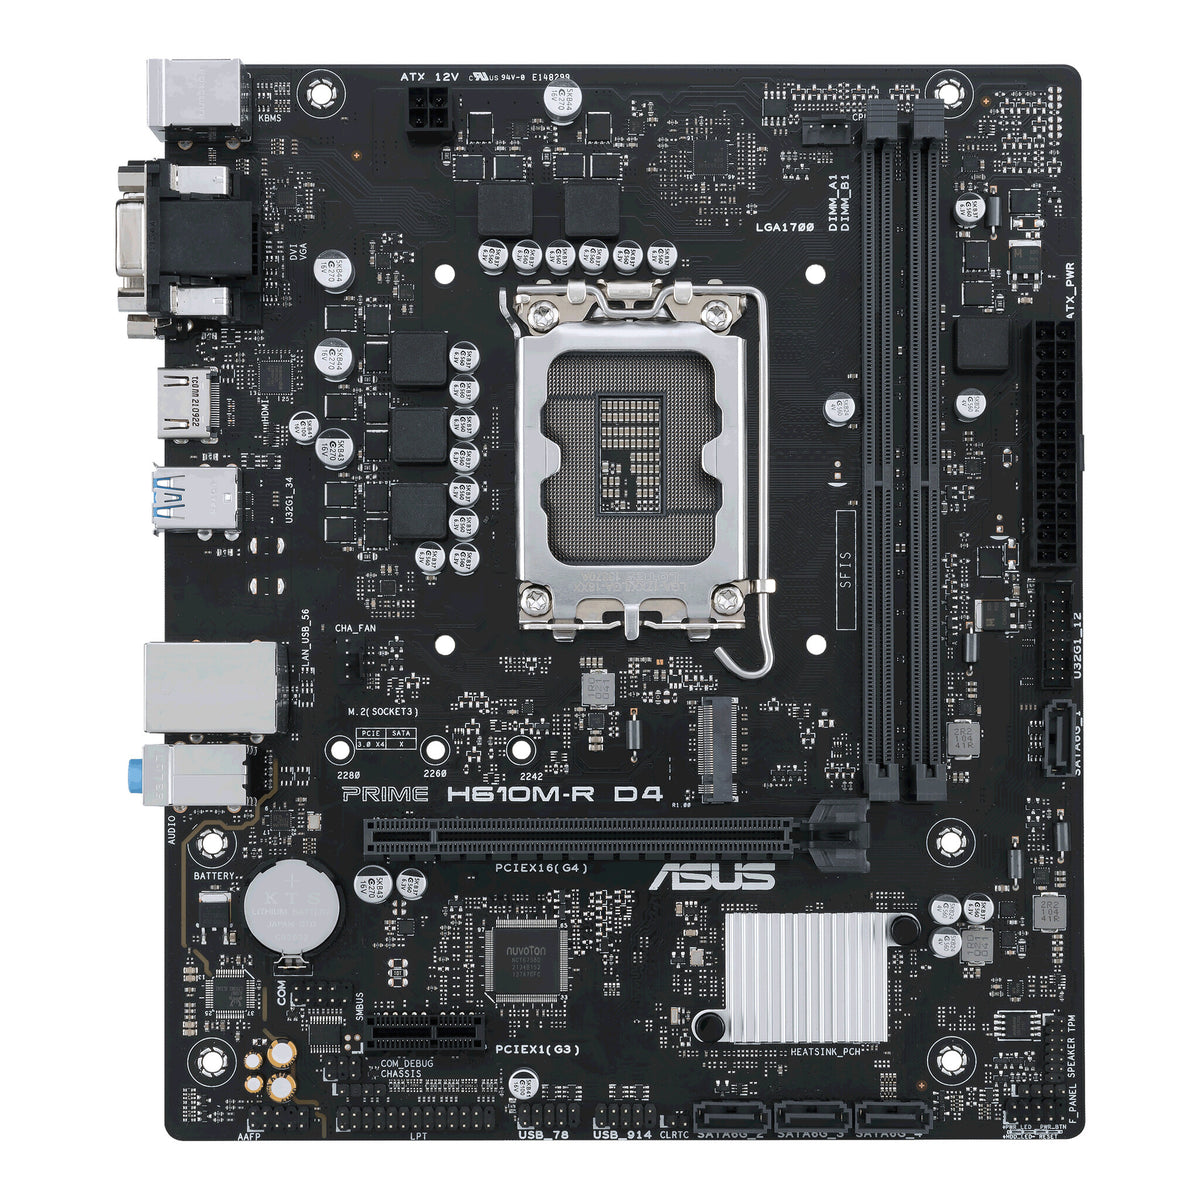 ASUS PRIME H610M-R D4 micro ATX Motherboard - Intel H610 LGA 1700